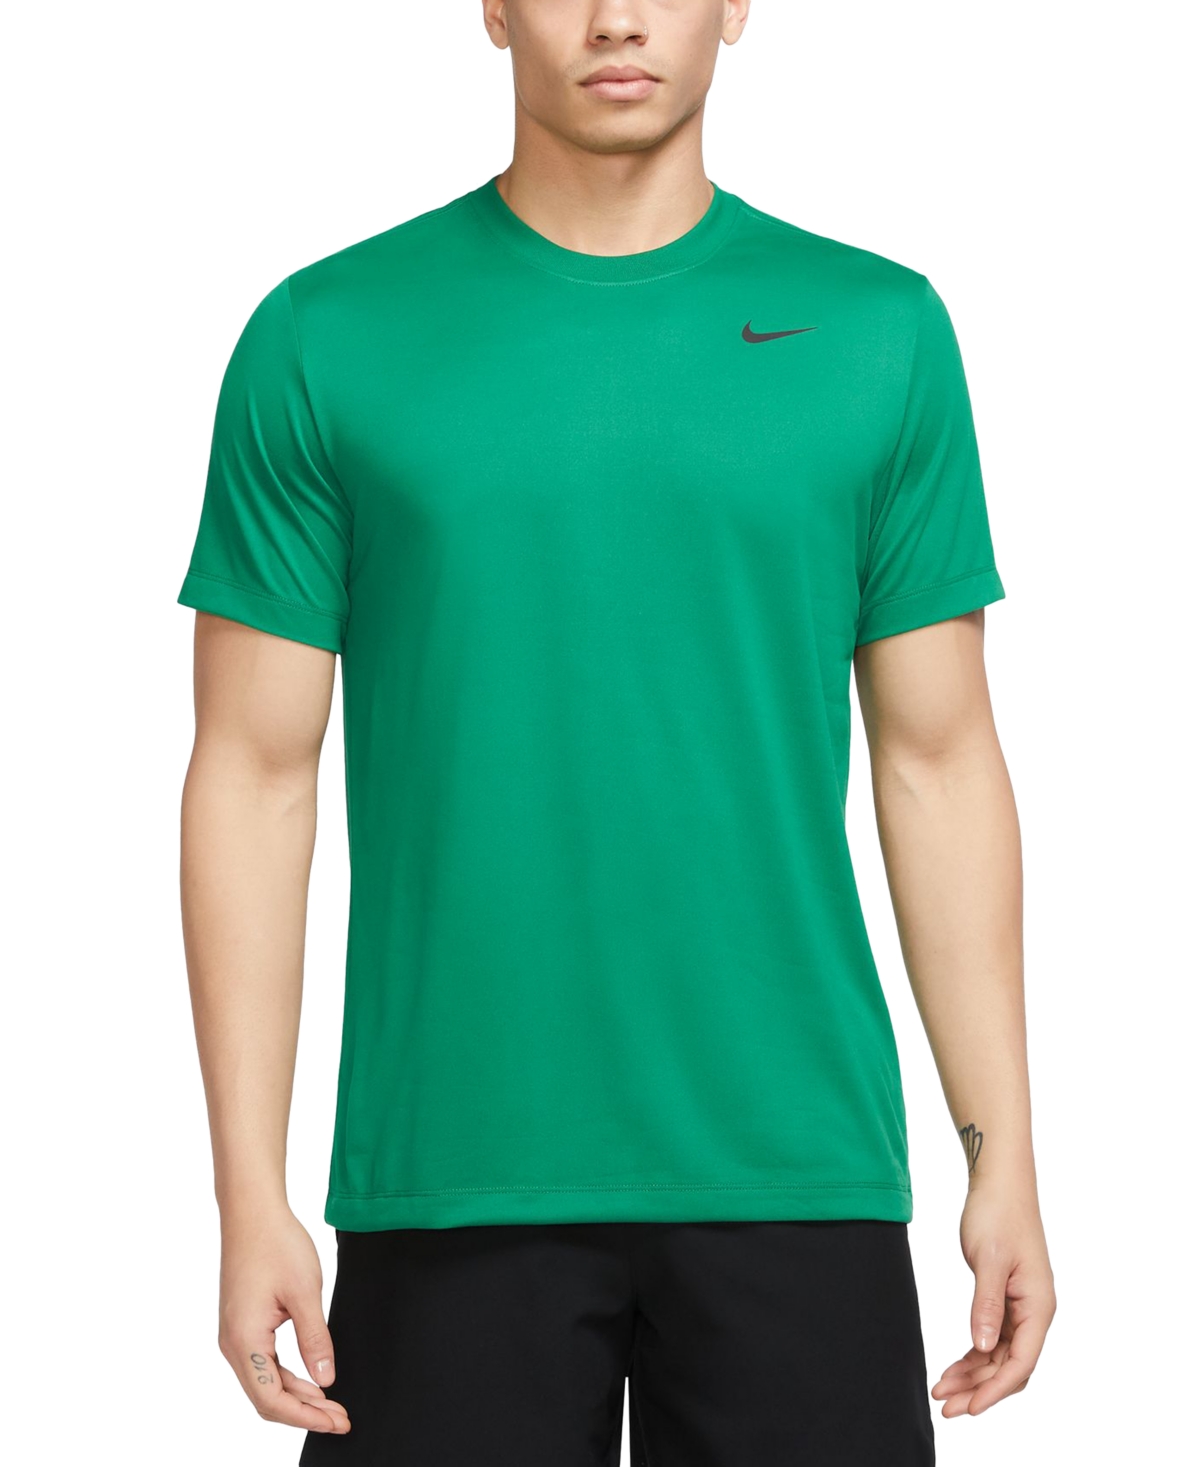 Nike Men's Dri-fit Legend Fitness T-shirt In Pine Green,black